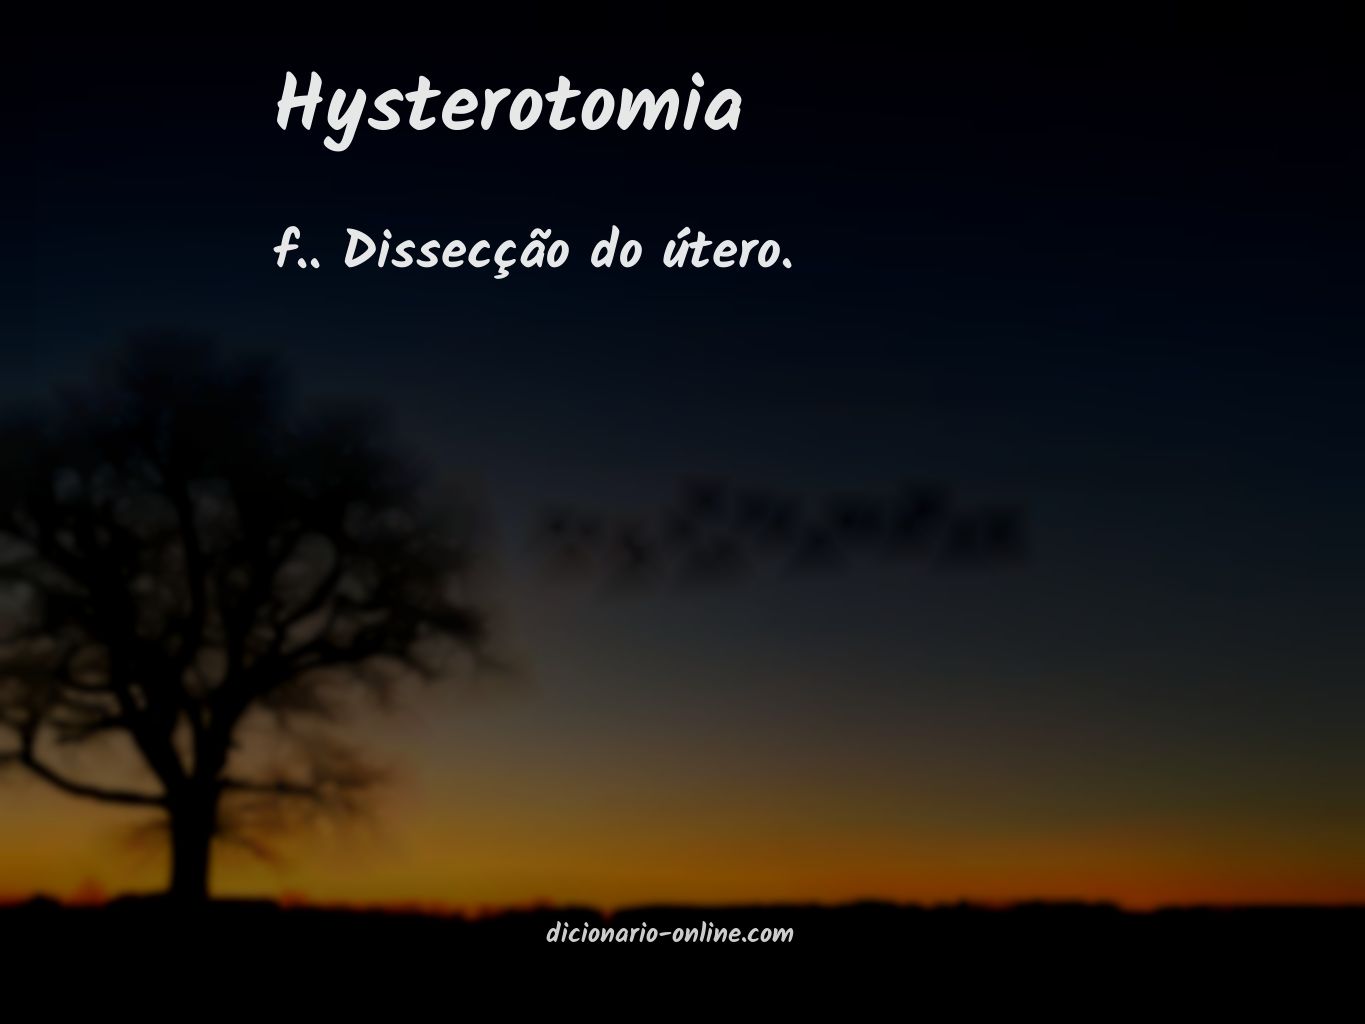 Significado de hysterotomia